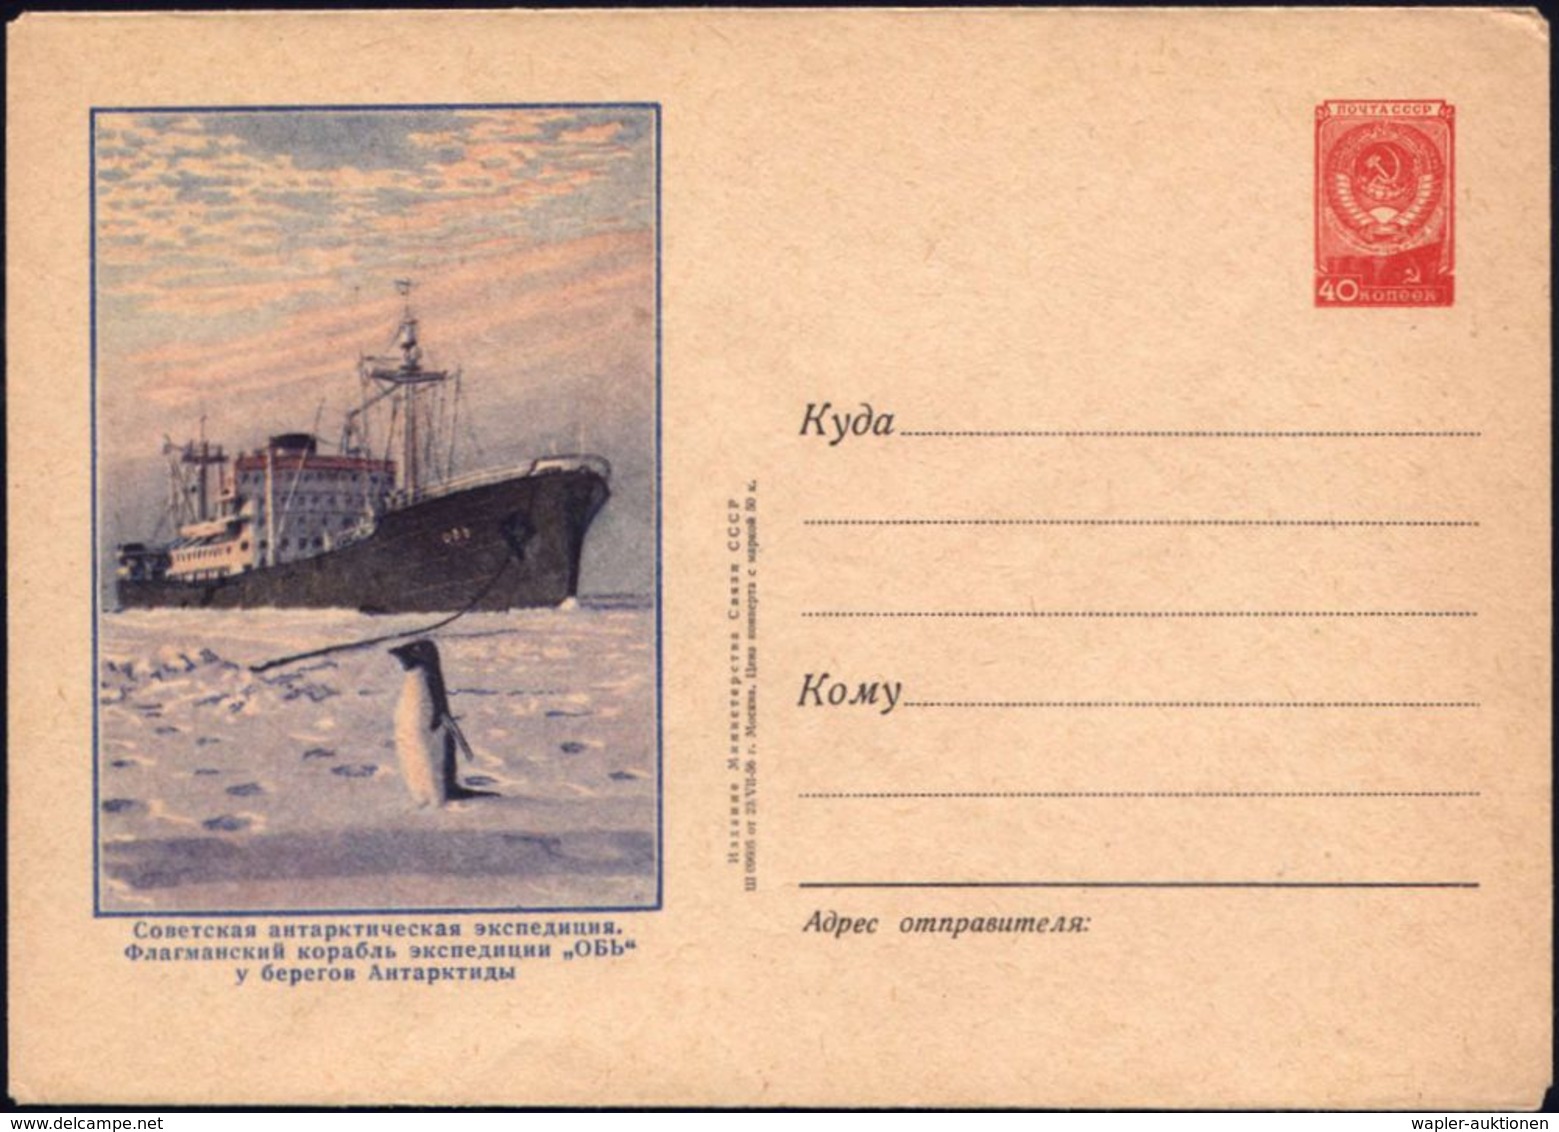 UdSSR 1956 40 Kop. U Staatswappen, Rot: Sowjet. Antarktis-Expedition (= Forschungsschiff, Pinguin) Ungebr. - - Spedizioni Antartiche